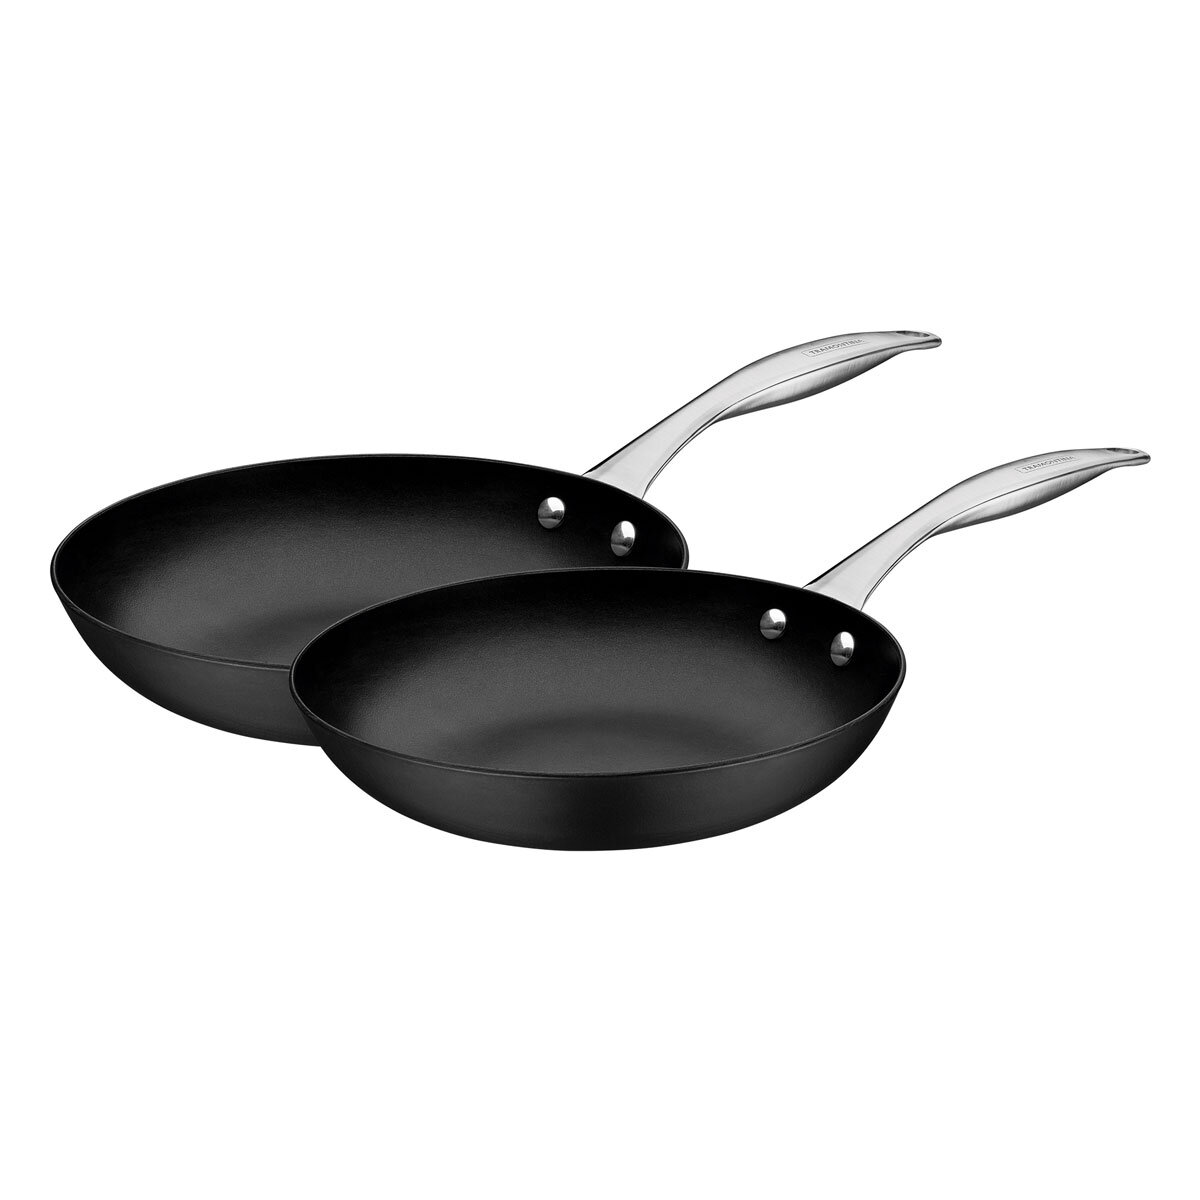 Tramontina Cast Iron Frying Pan, 2 Piece